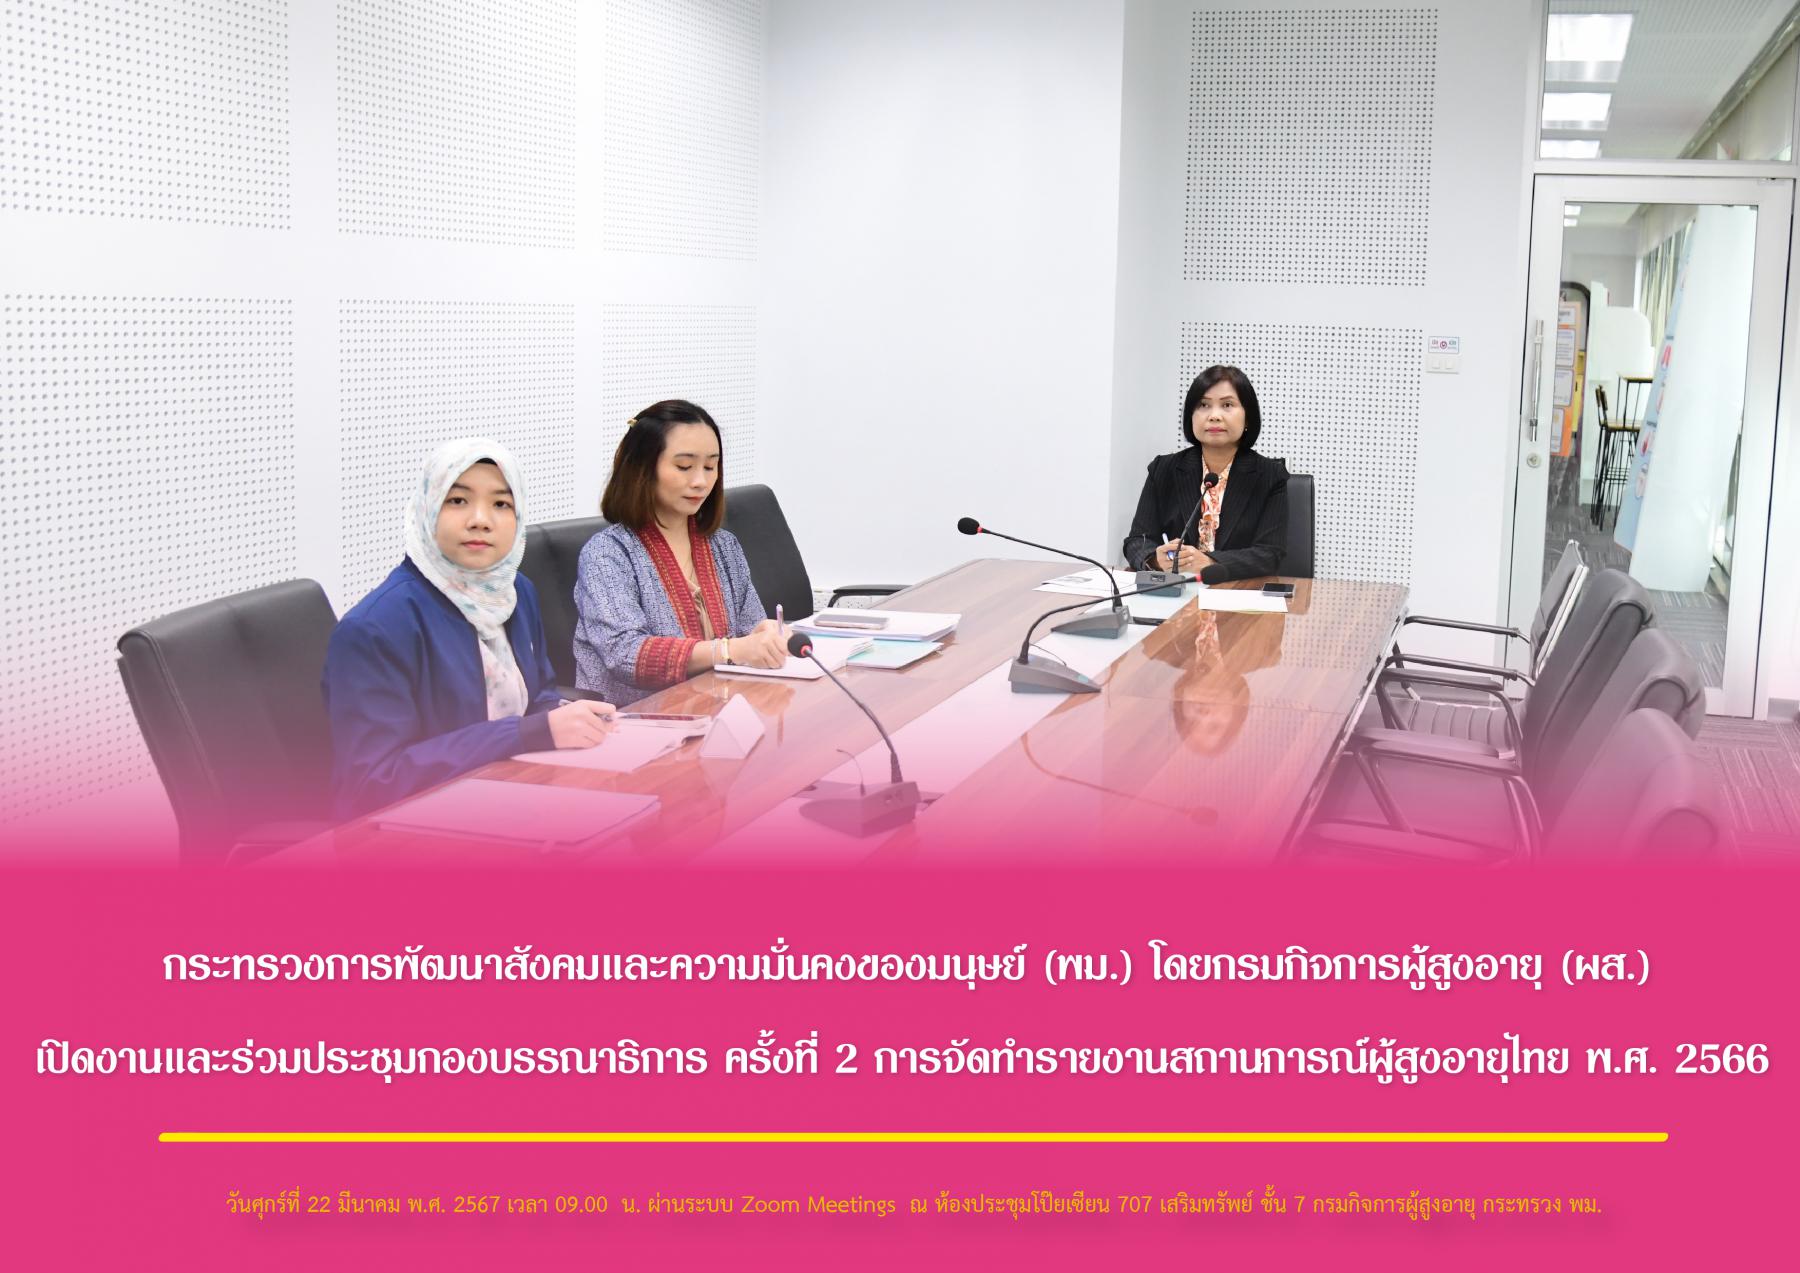 กระทรวงการพัฒนาสังคมและความมั่นคงของมนุษย์ (พม.) โดยกรมกิจการผู้สูงอายุ (ผส.) เปิดงานและร่วมประชุมกองบรรณาธิการ ครั้งที่ 2 การจัดทำรายงานสถานการณ์ผู้สูงอายุไทย พ.ศ. 2566